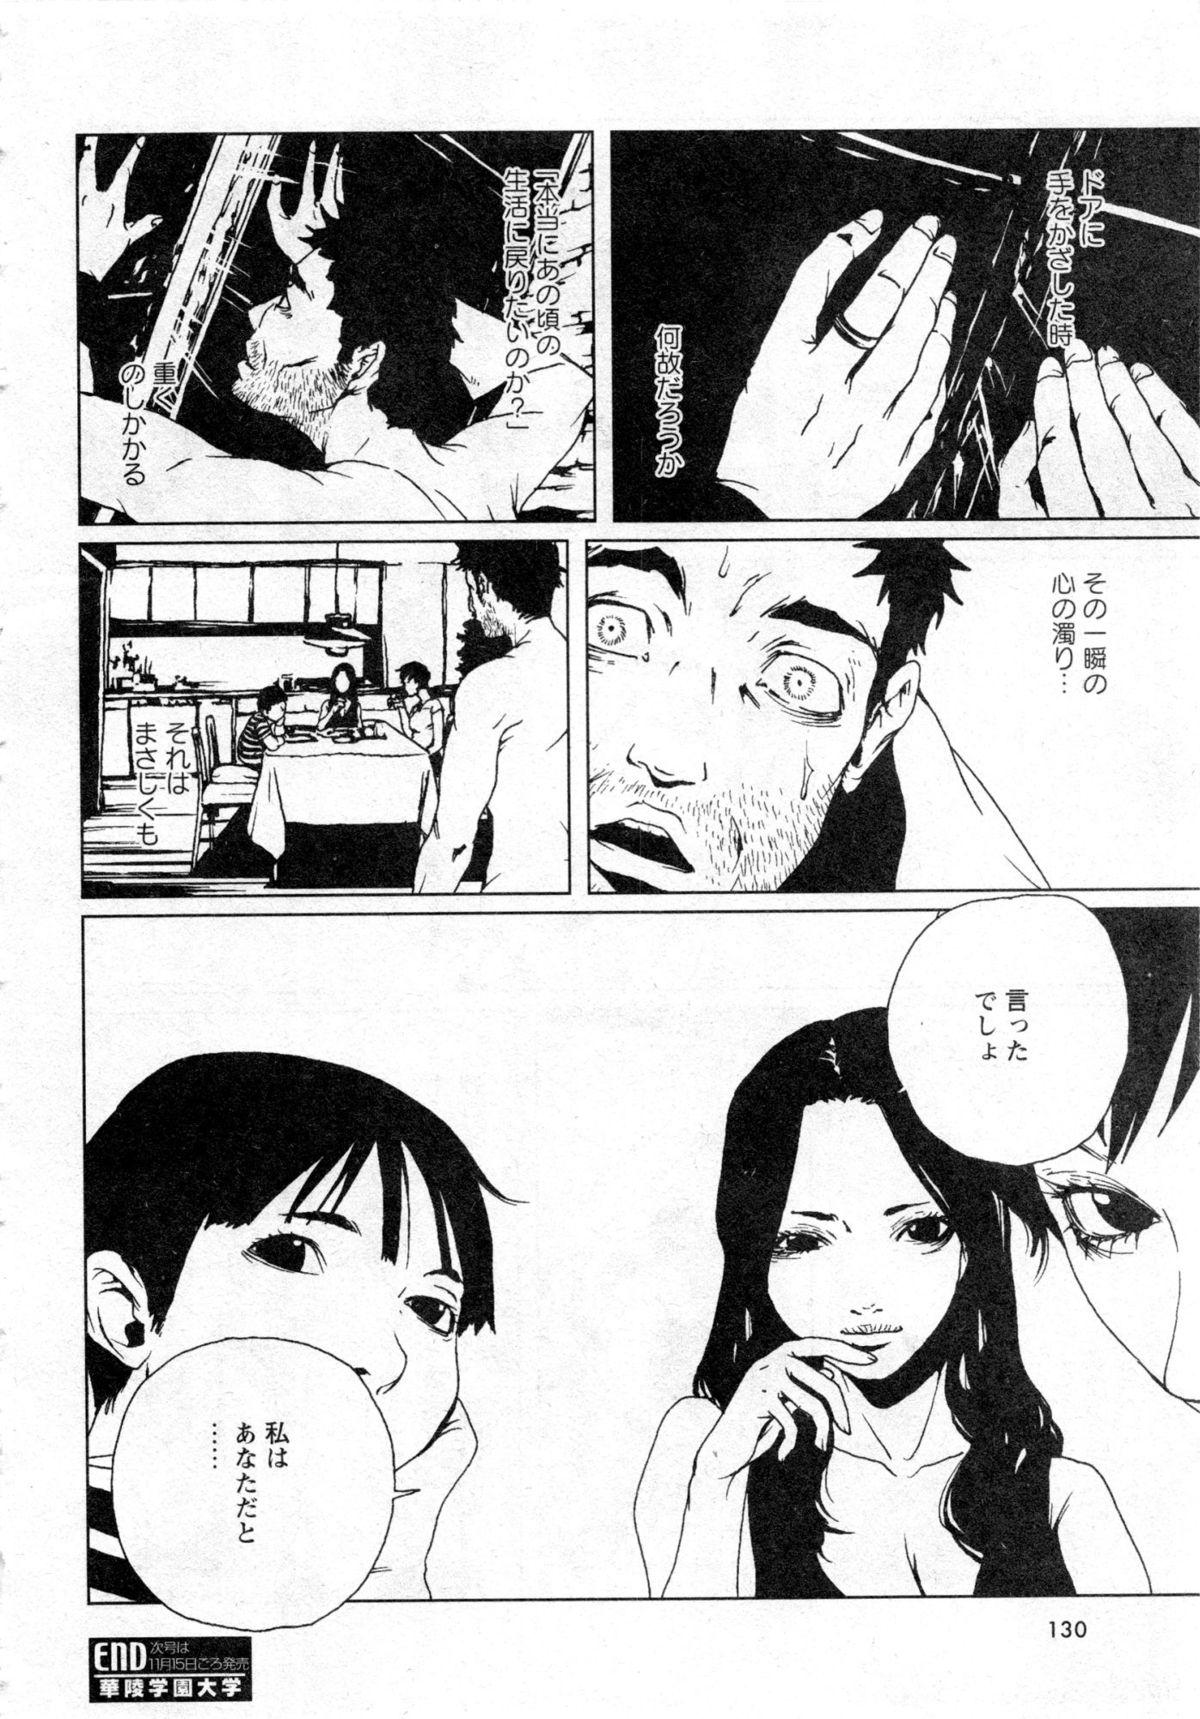 Karyou Gakuen Daigaku 2006-10 Vol.1 130